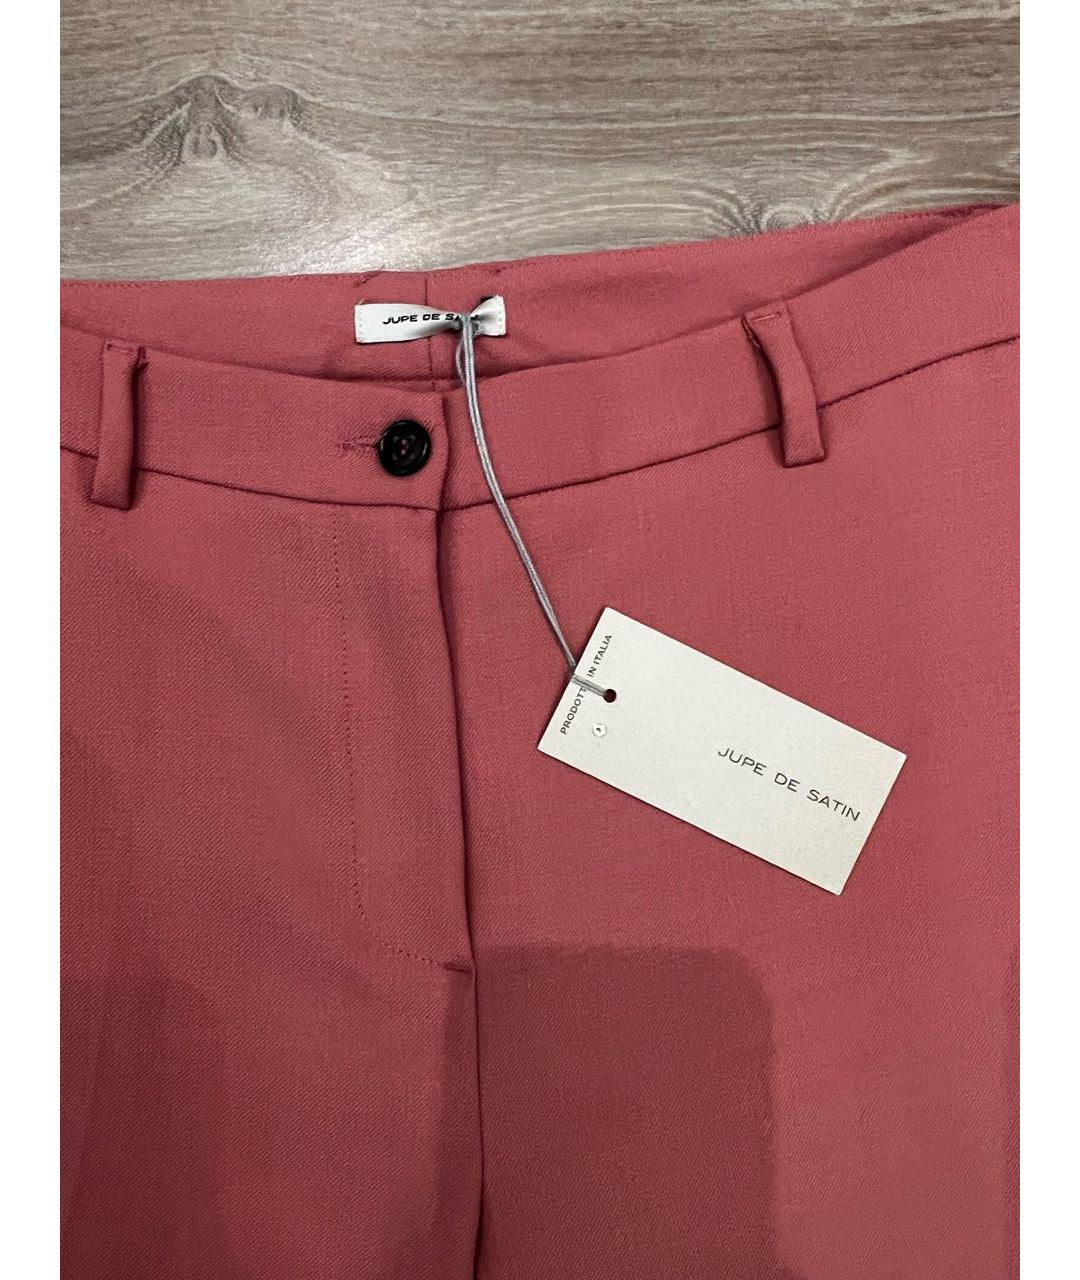 JUPE DE SATIN Розовые шерстяные брюки узкие, фото 3